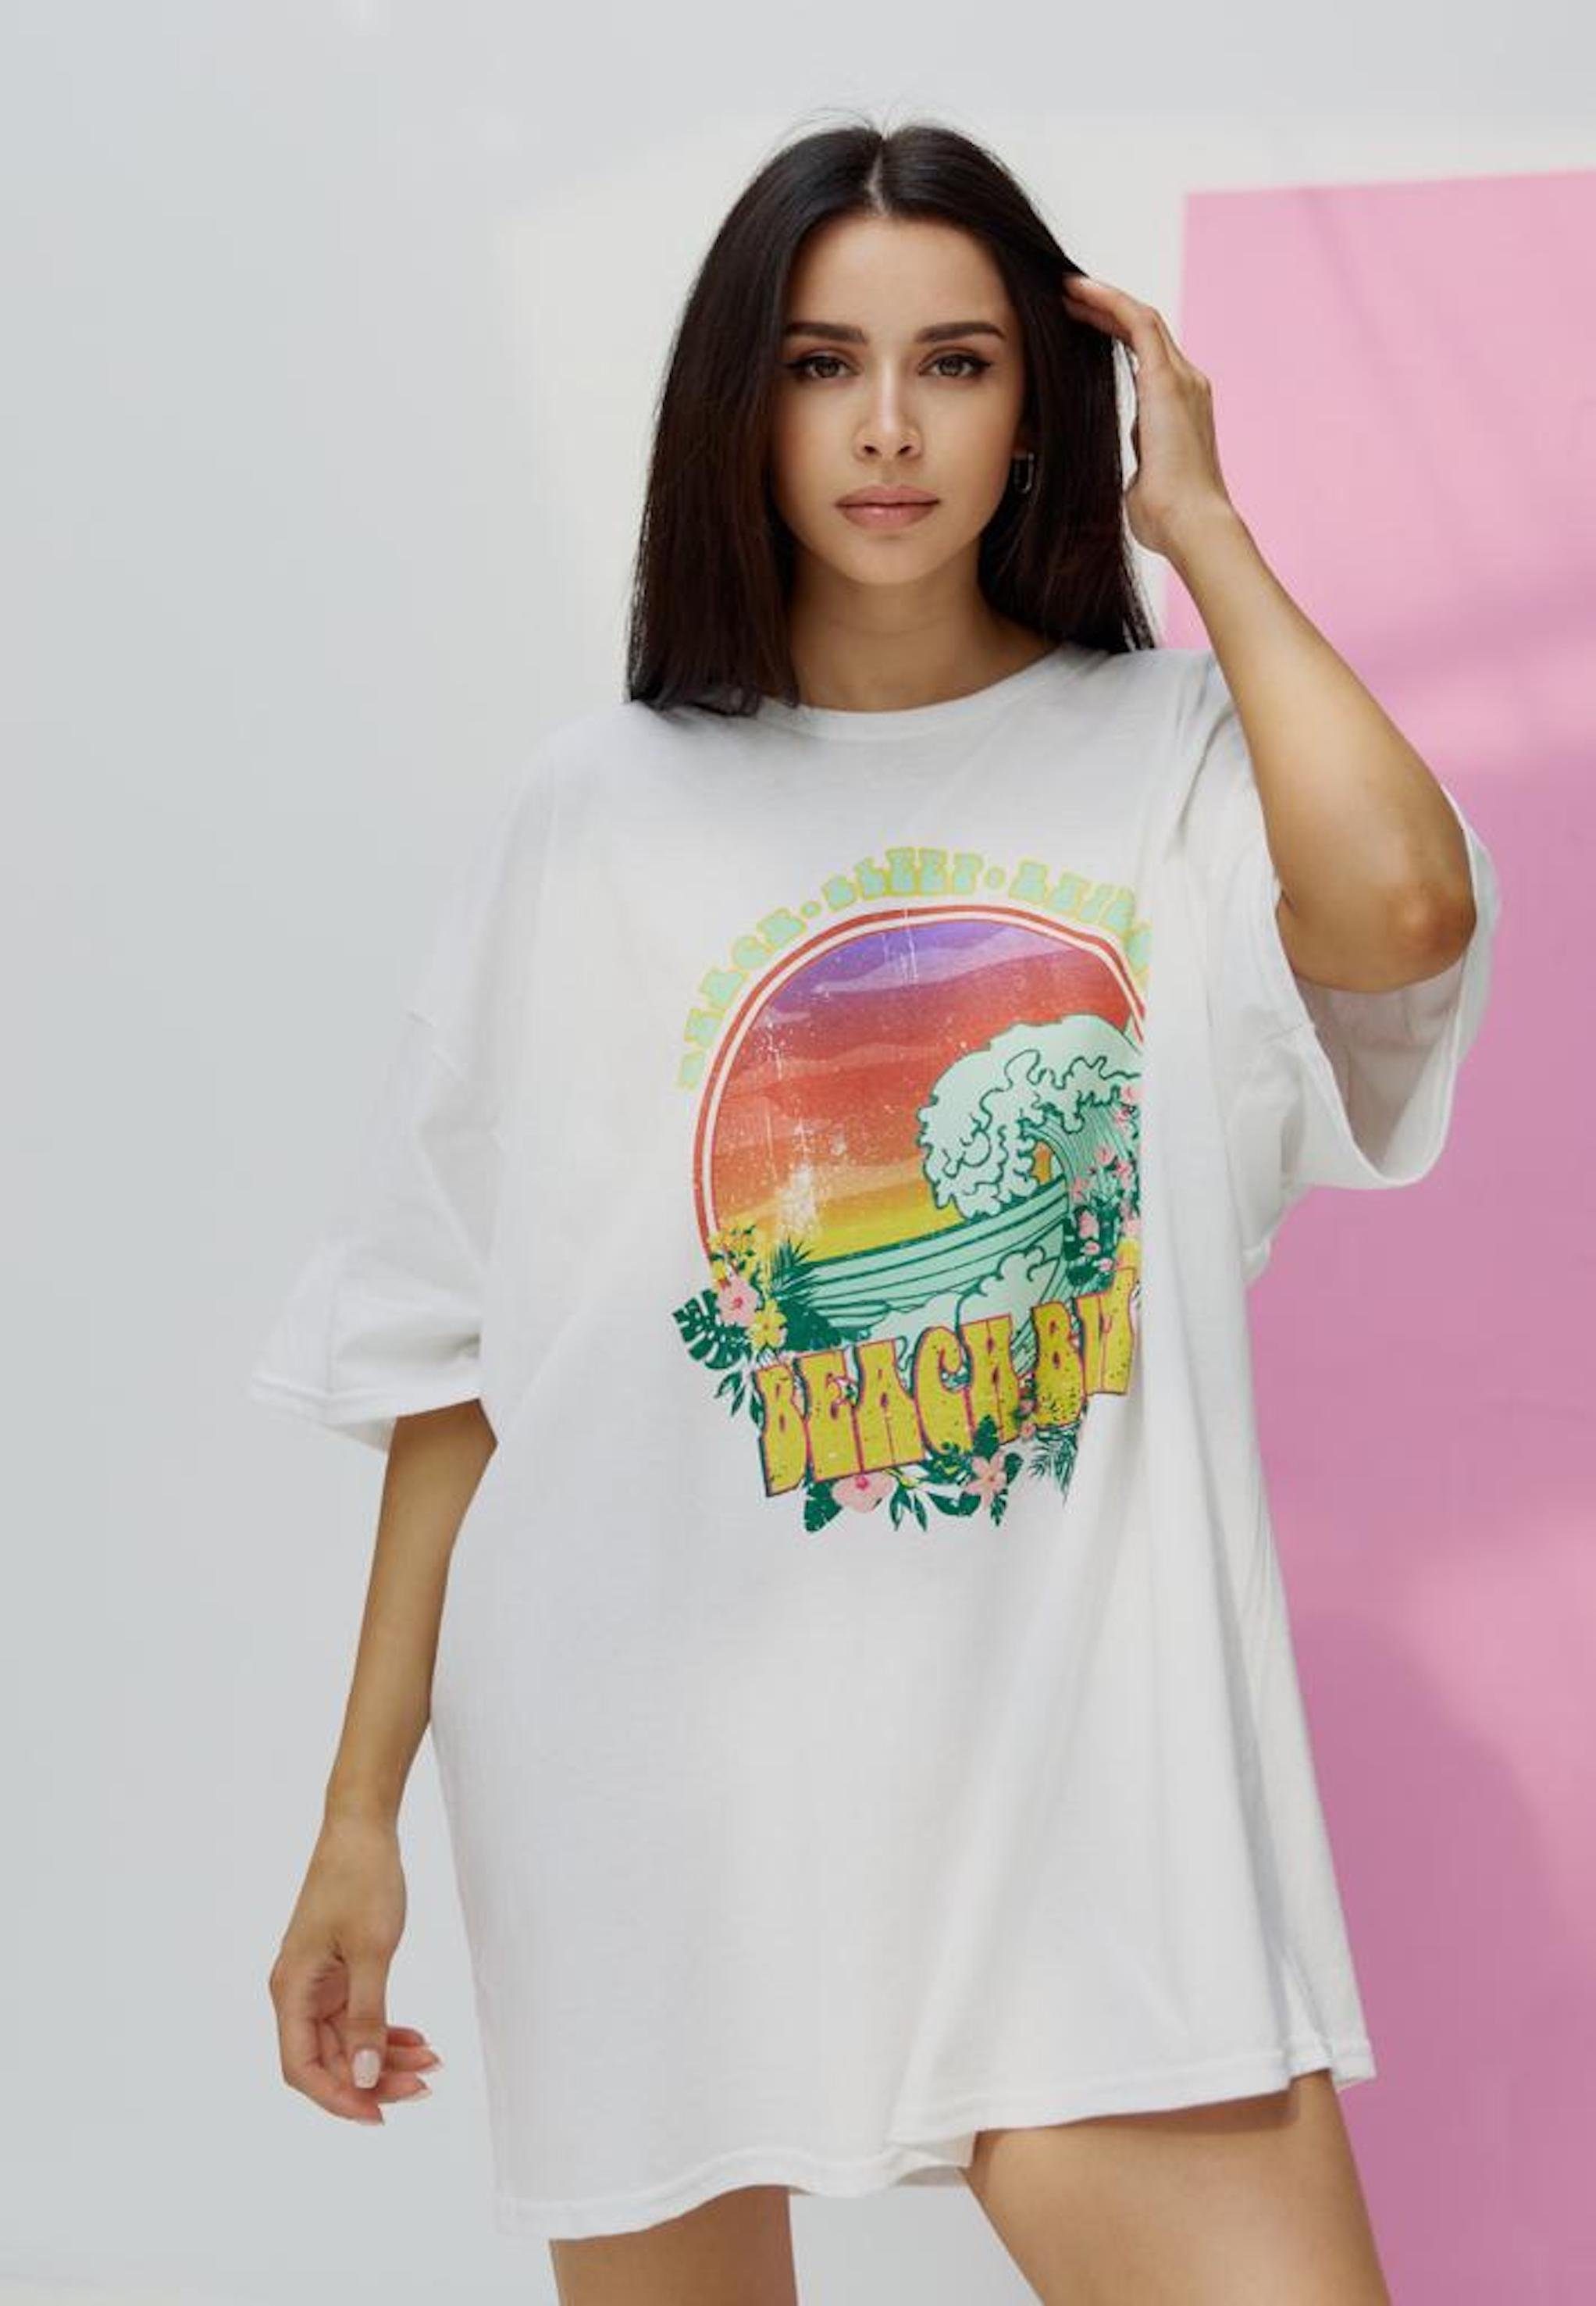 Worldclassca T-Shirt Worldclassca Oversized BEACH BUM Print T-Shirt lang Sommer Oberteil Weiß